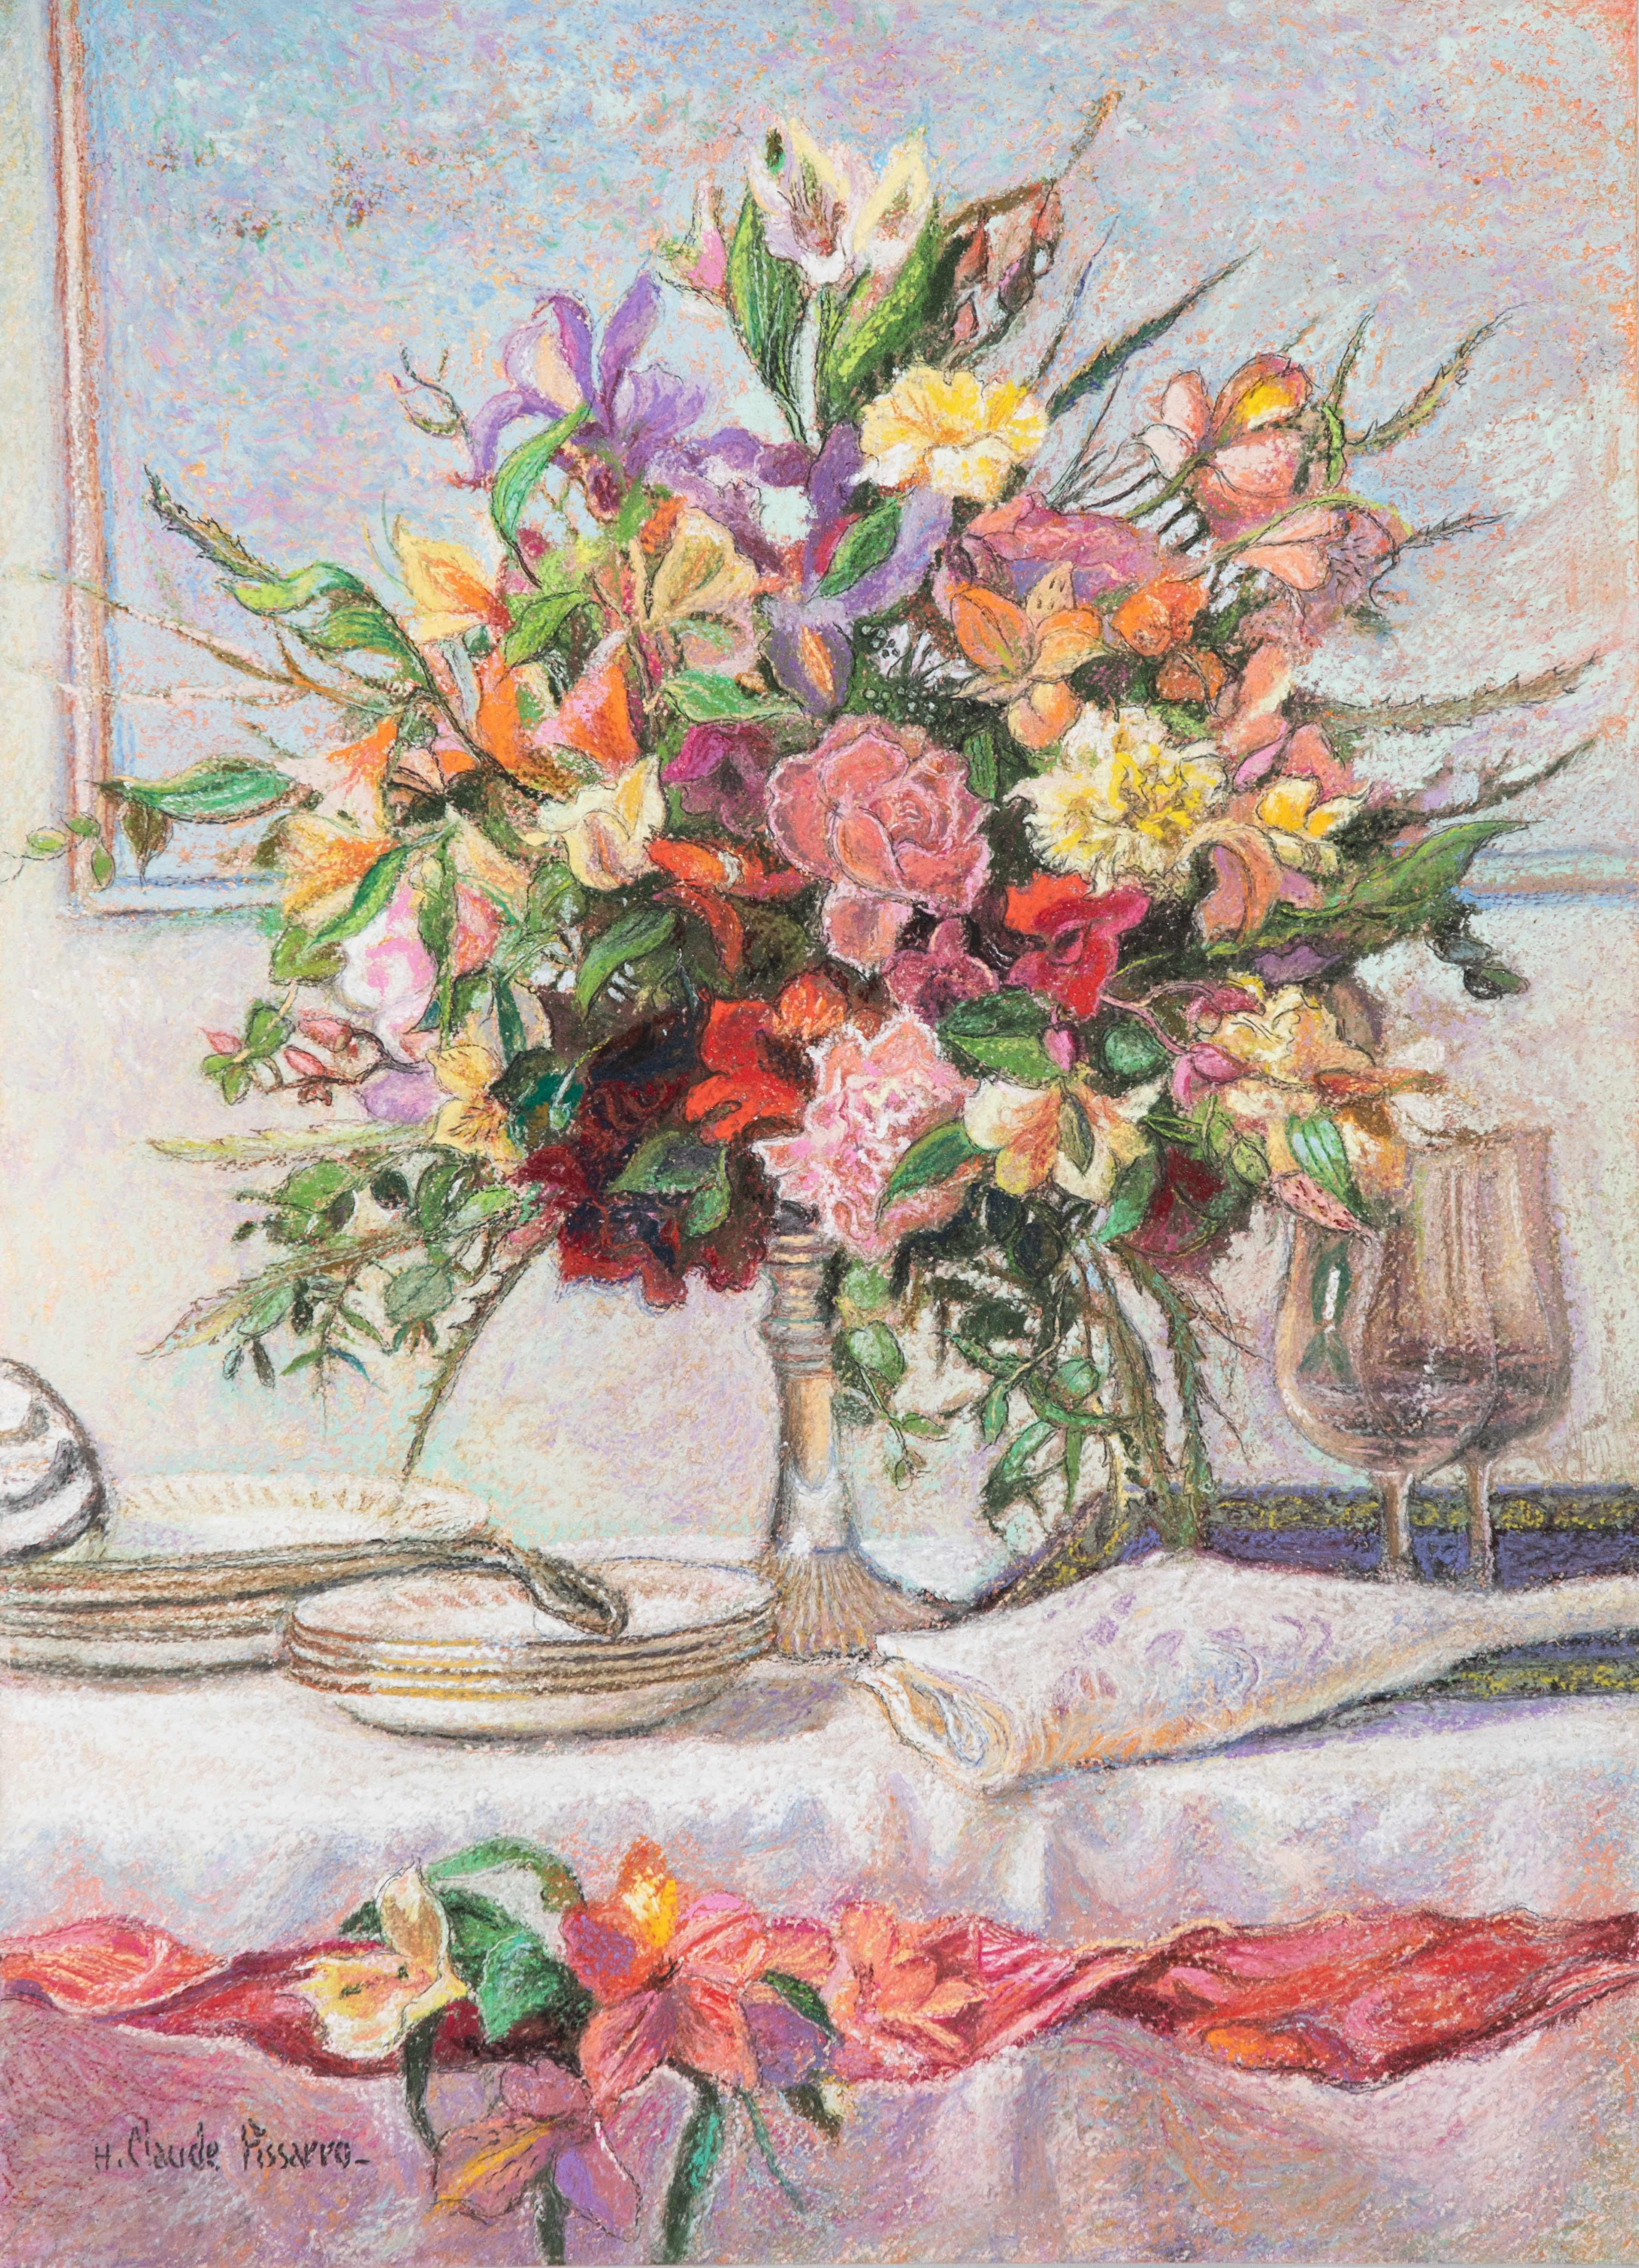 Bouquet pour le dîner by H. Claude Pissarro - Still Life, pastel on card - Art by Hughes Claude Pissarro